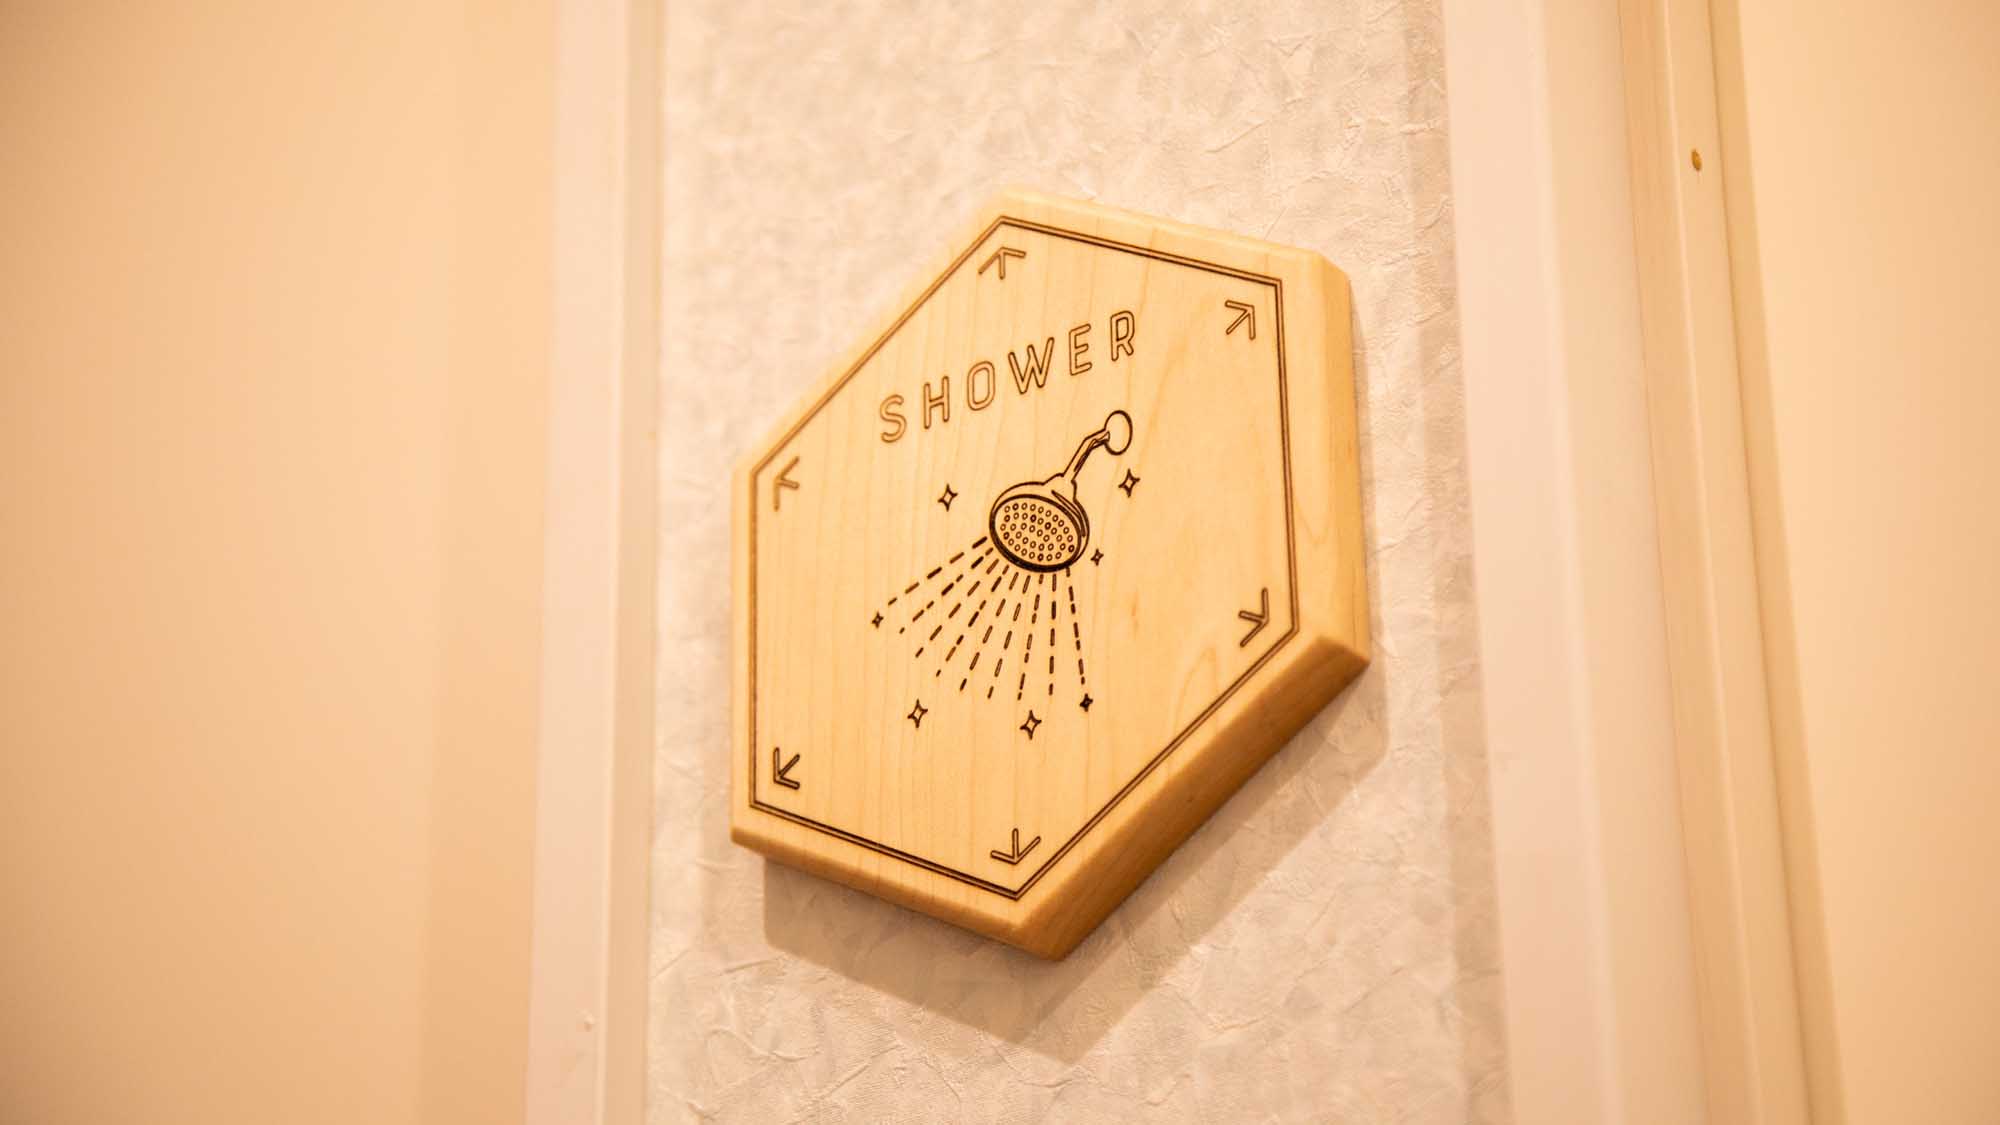 ・館内には男女共用のシャワールームと女性専用のシャワールームがございます